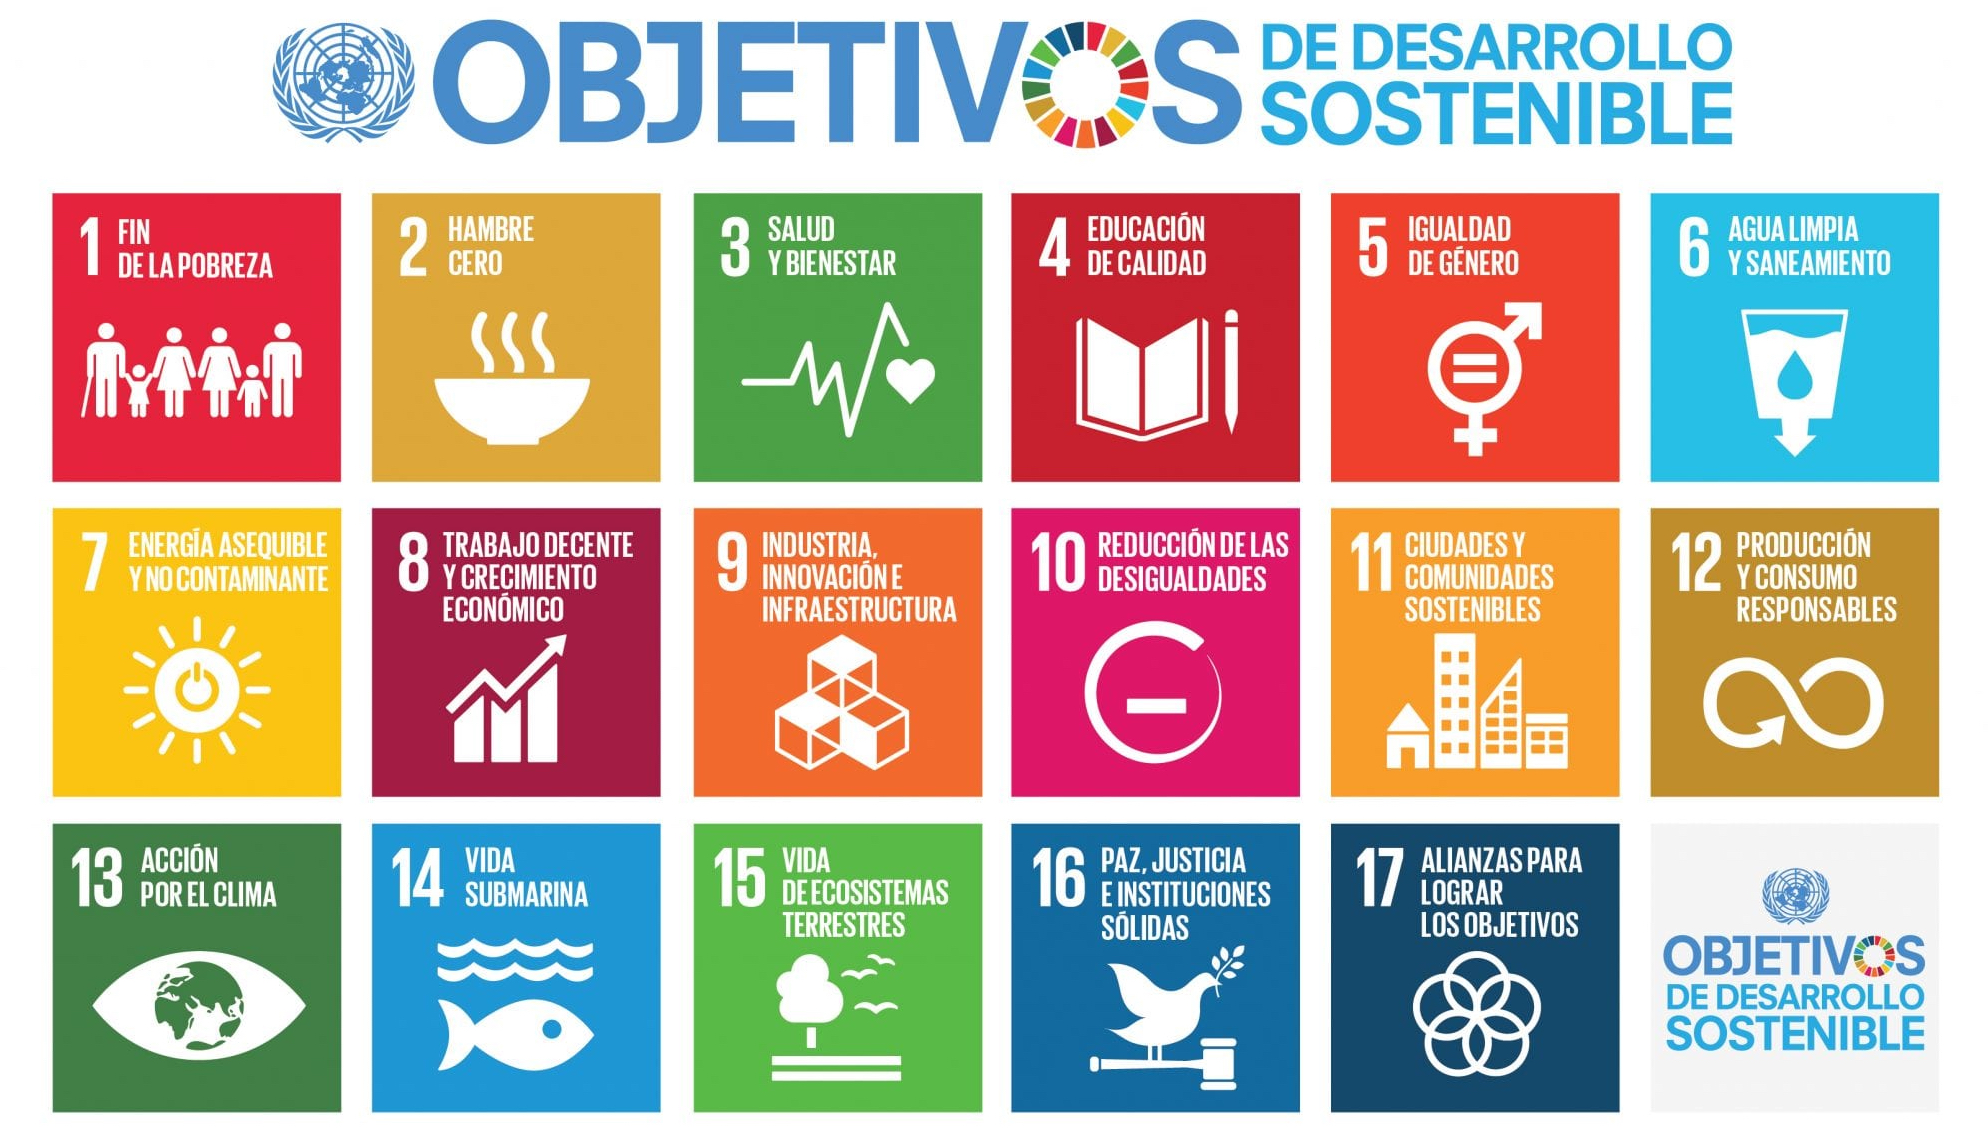 Imagen que incluye los diecisiete objetivos de desarrollo sostenible que se presentan a continuación acompañados de un icono que los representa